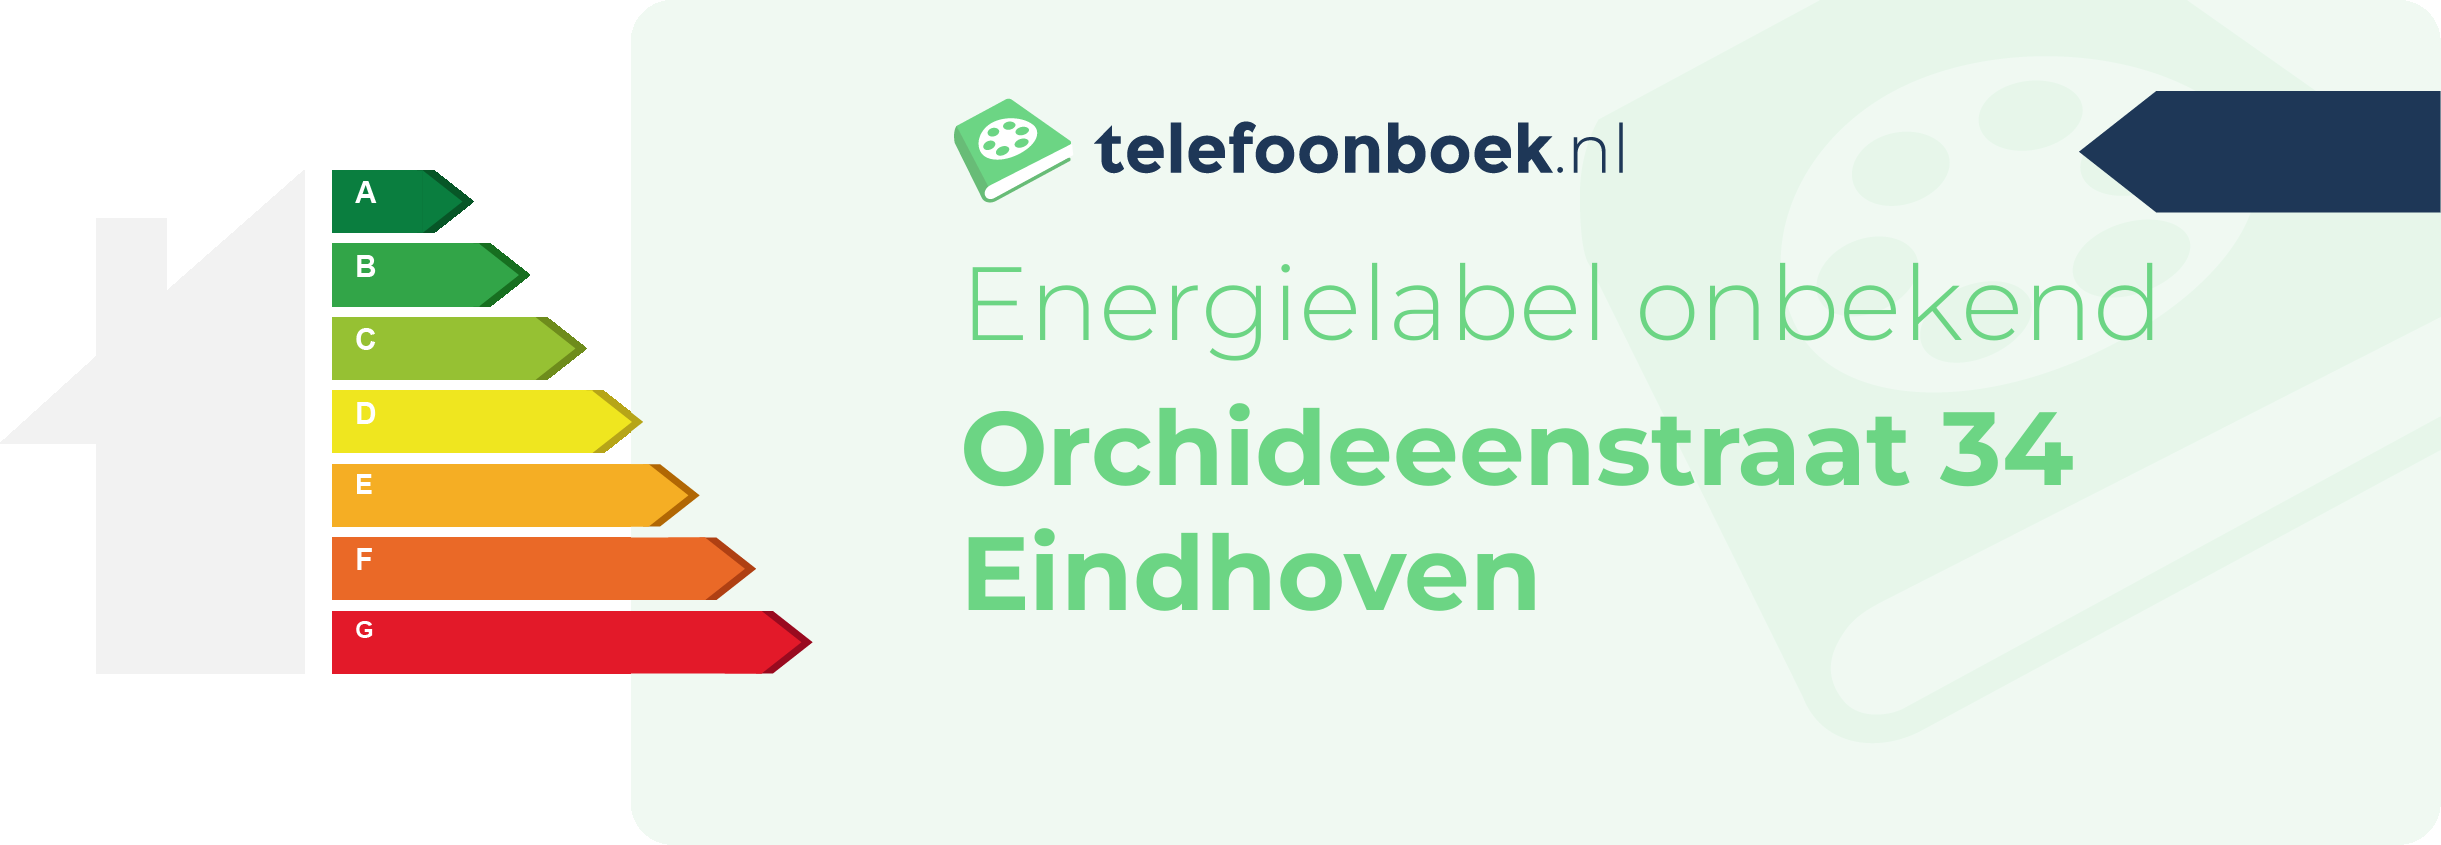 Energielabel Orchideeenstraat 34 Eindhoven